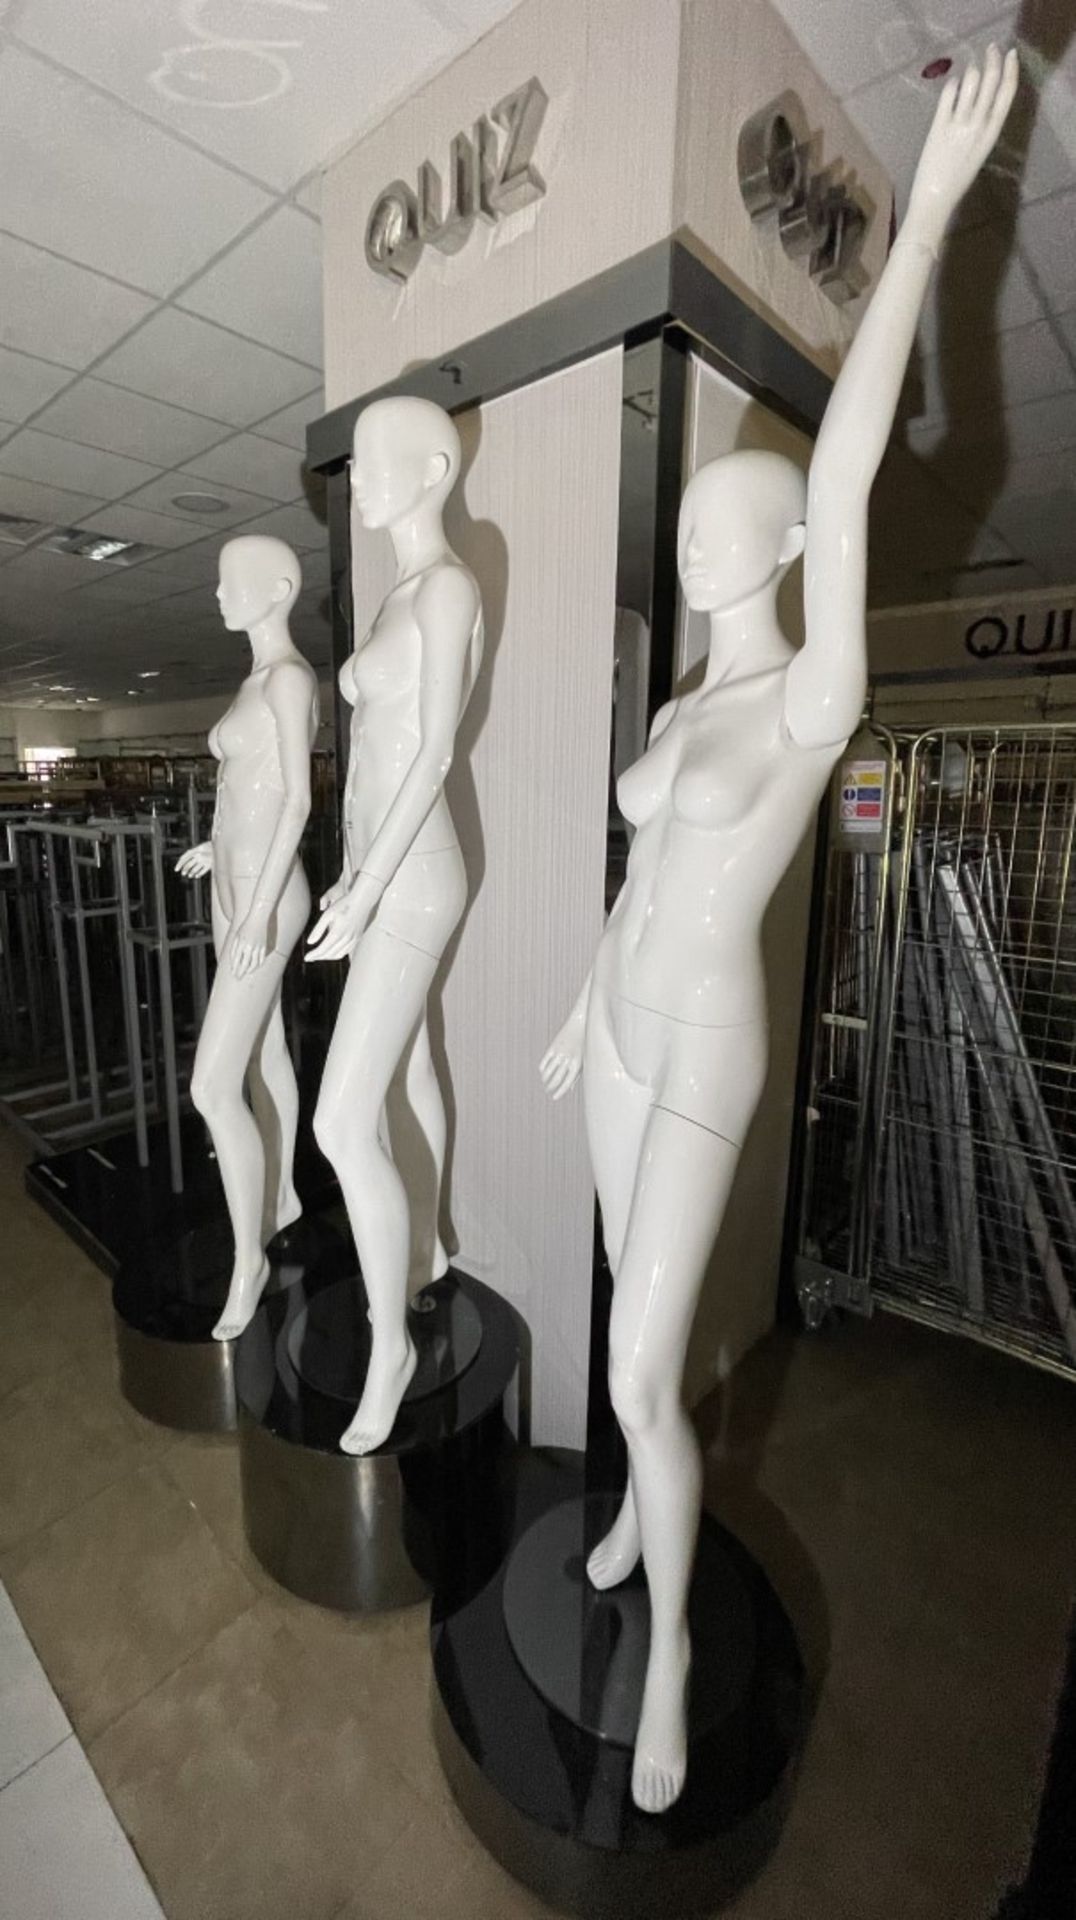 3 x Full Size Female Mannequins on Pedestal Plinth Stands - CL670 - Ref: GEM259 - Location: - Image 7 of 12